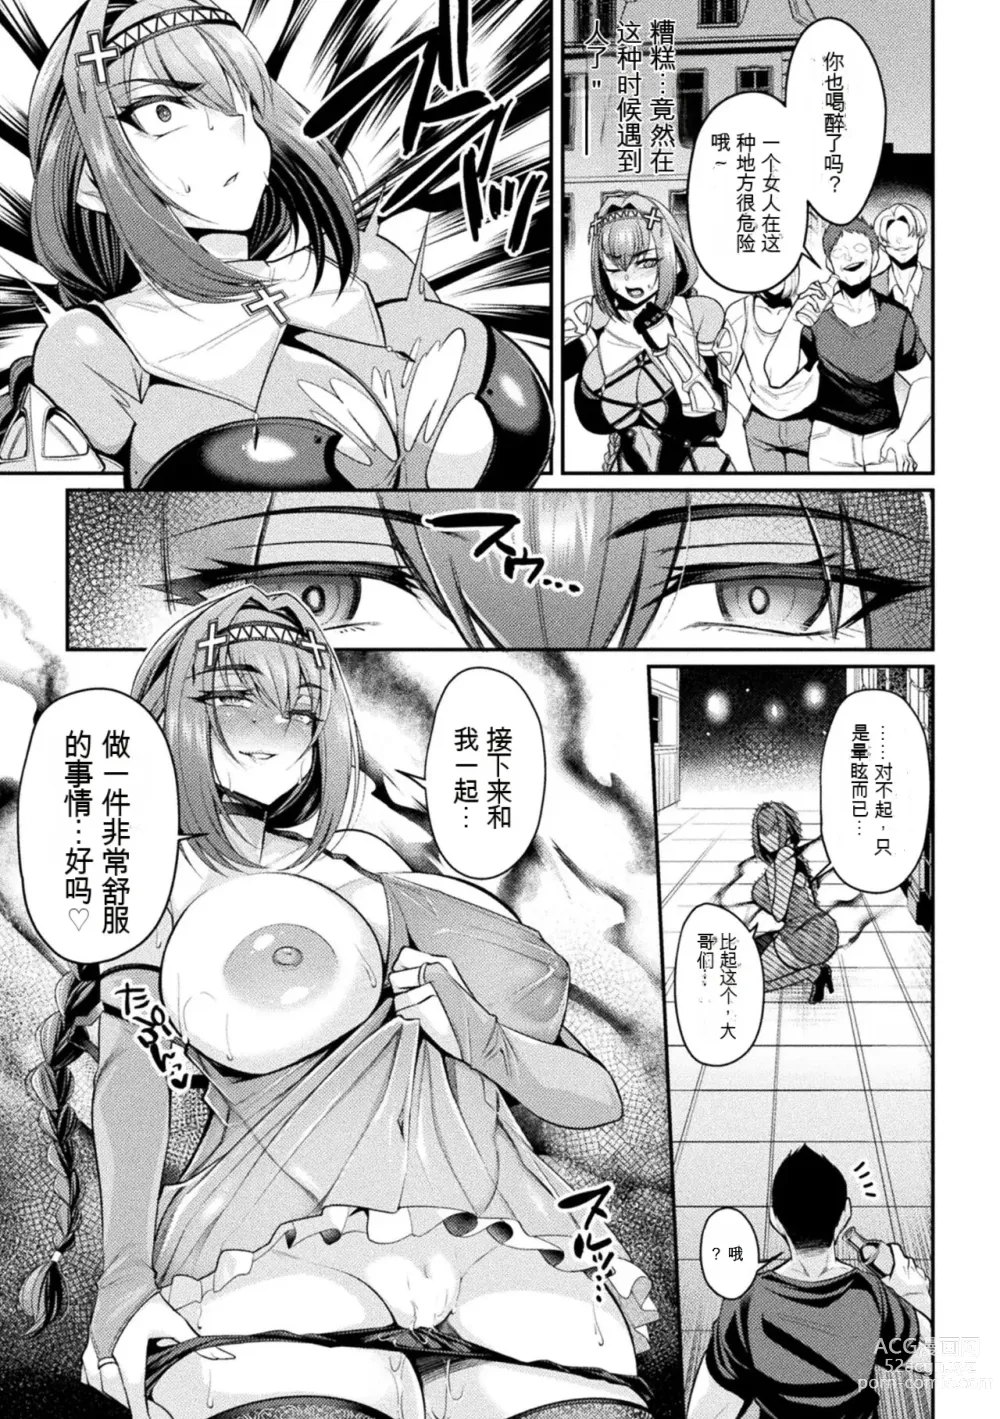 Page 5 of manga Taima Kishi Carla ~A knight fallen in lust~